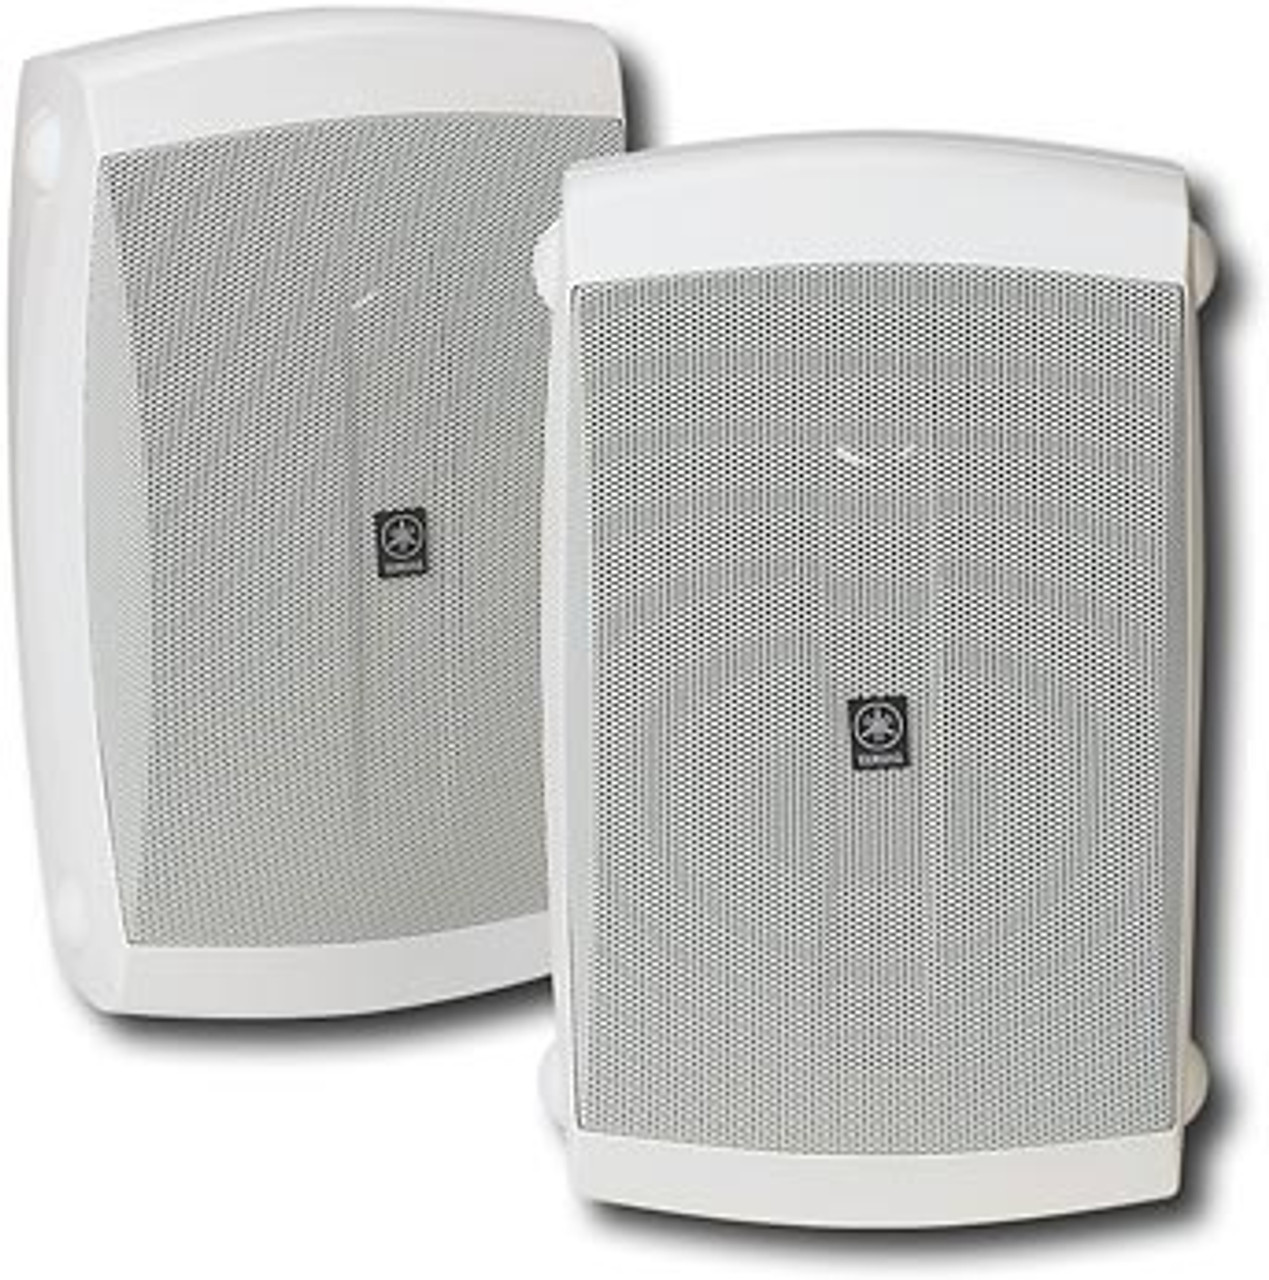 Yamaha - 2-Way Indoor/Outdoor Speakers (Pair) - White